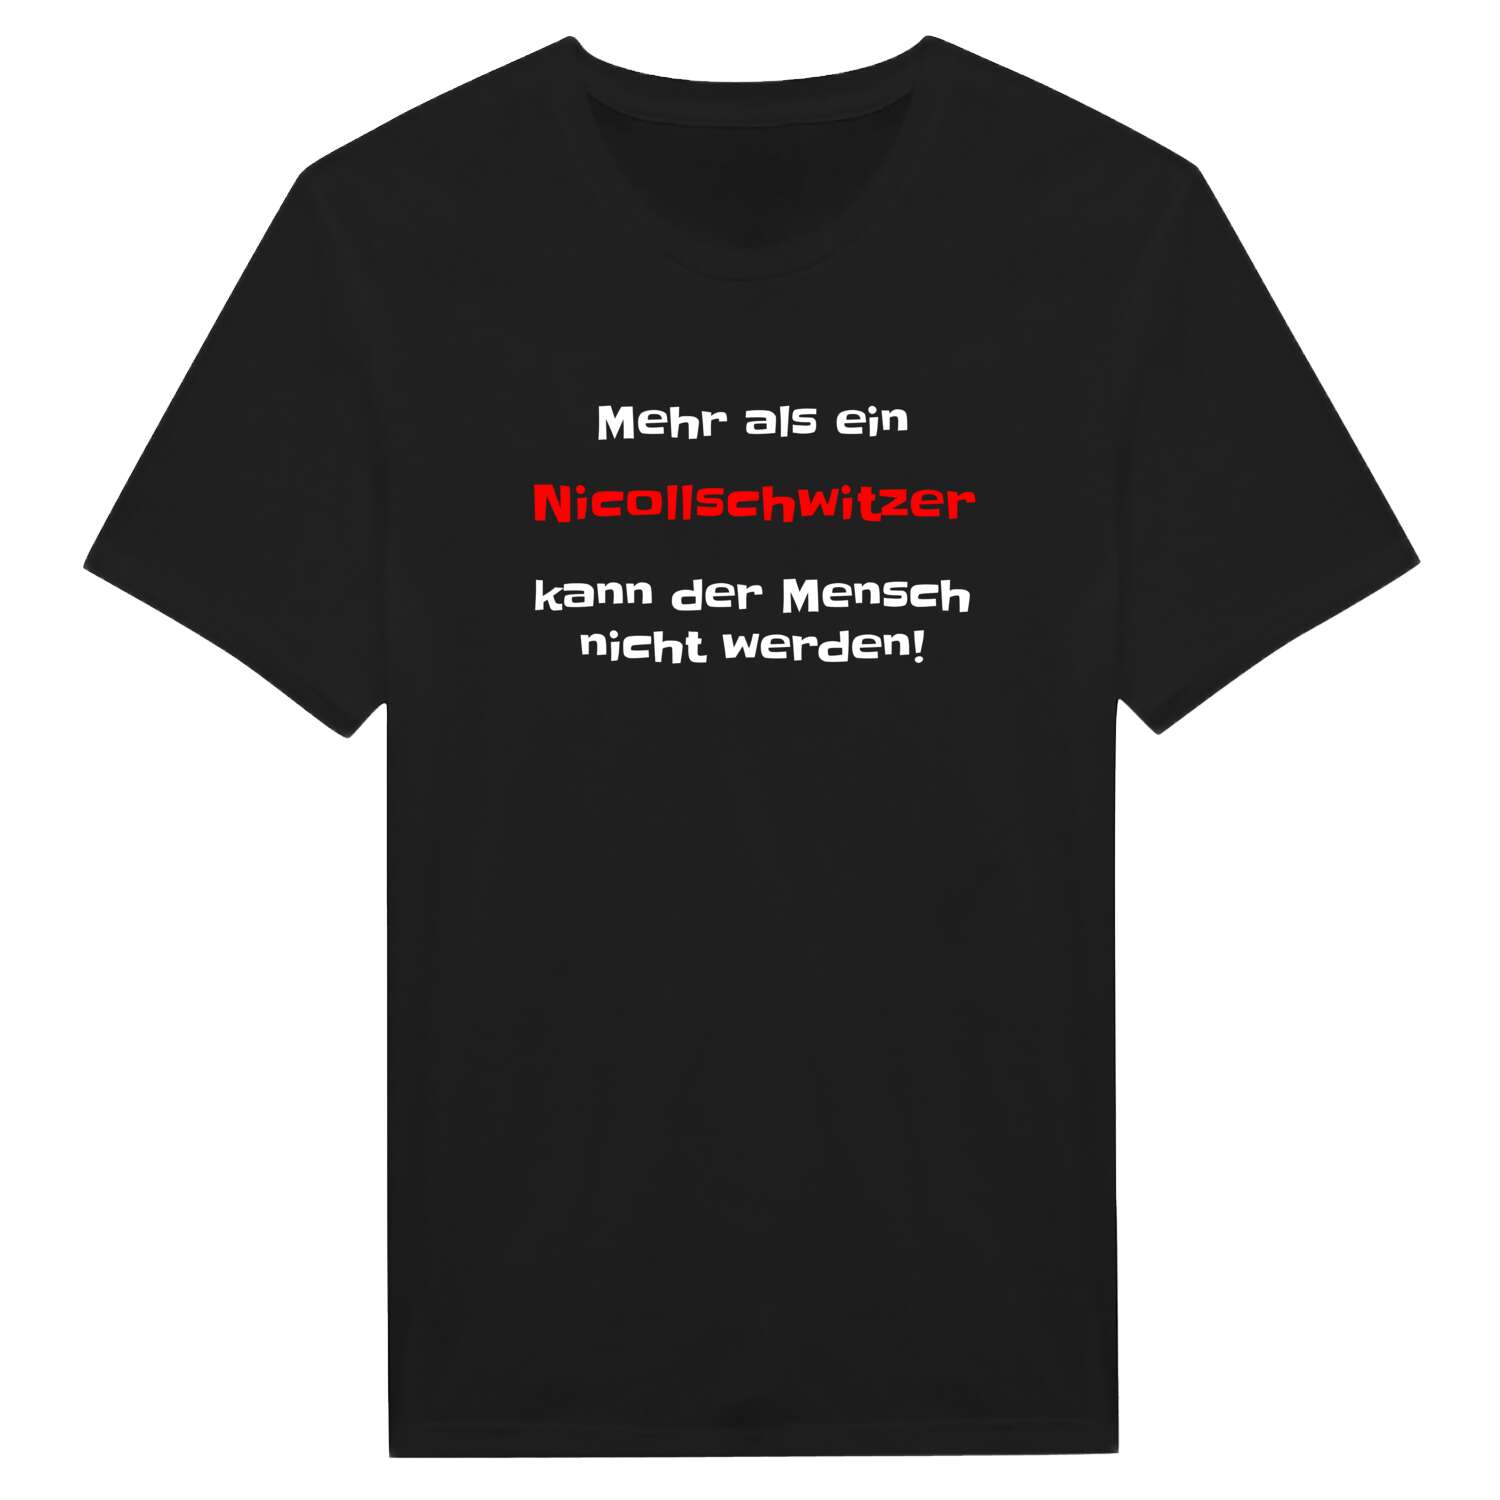 Nicollschwitz T-Shirt »Mehr als ein«